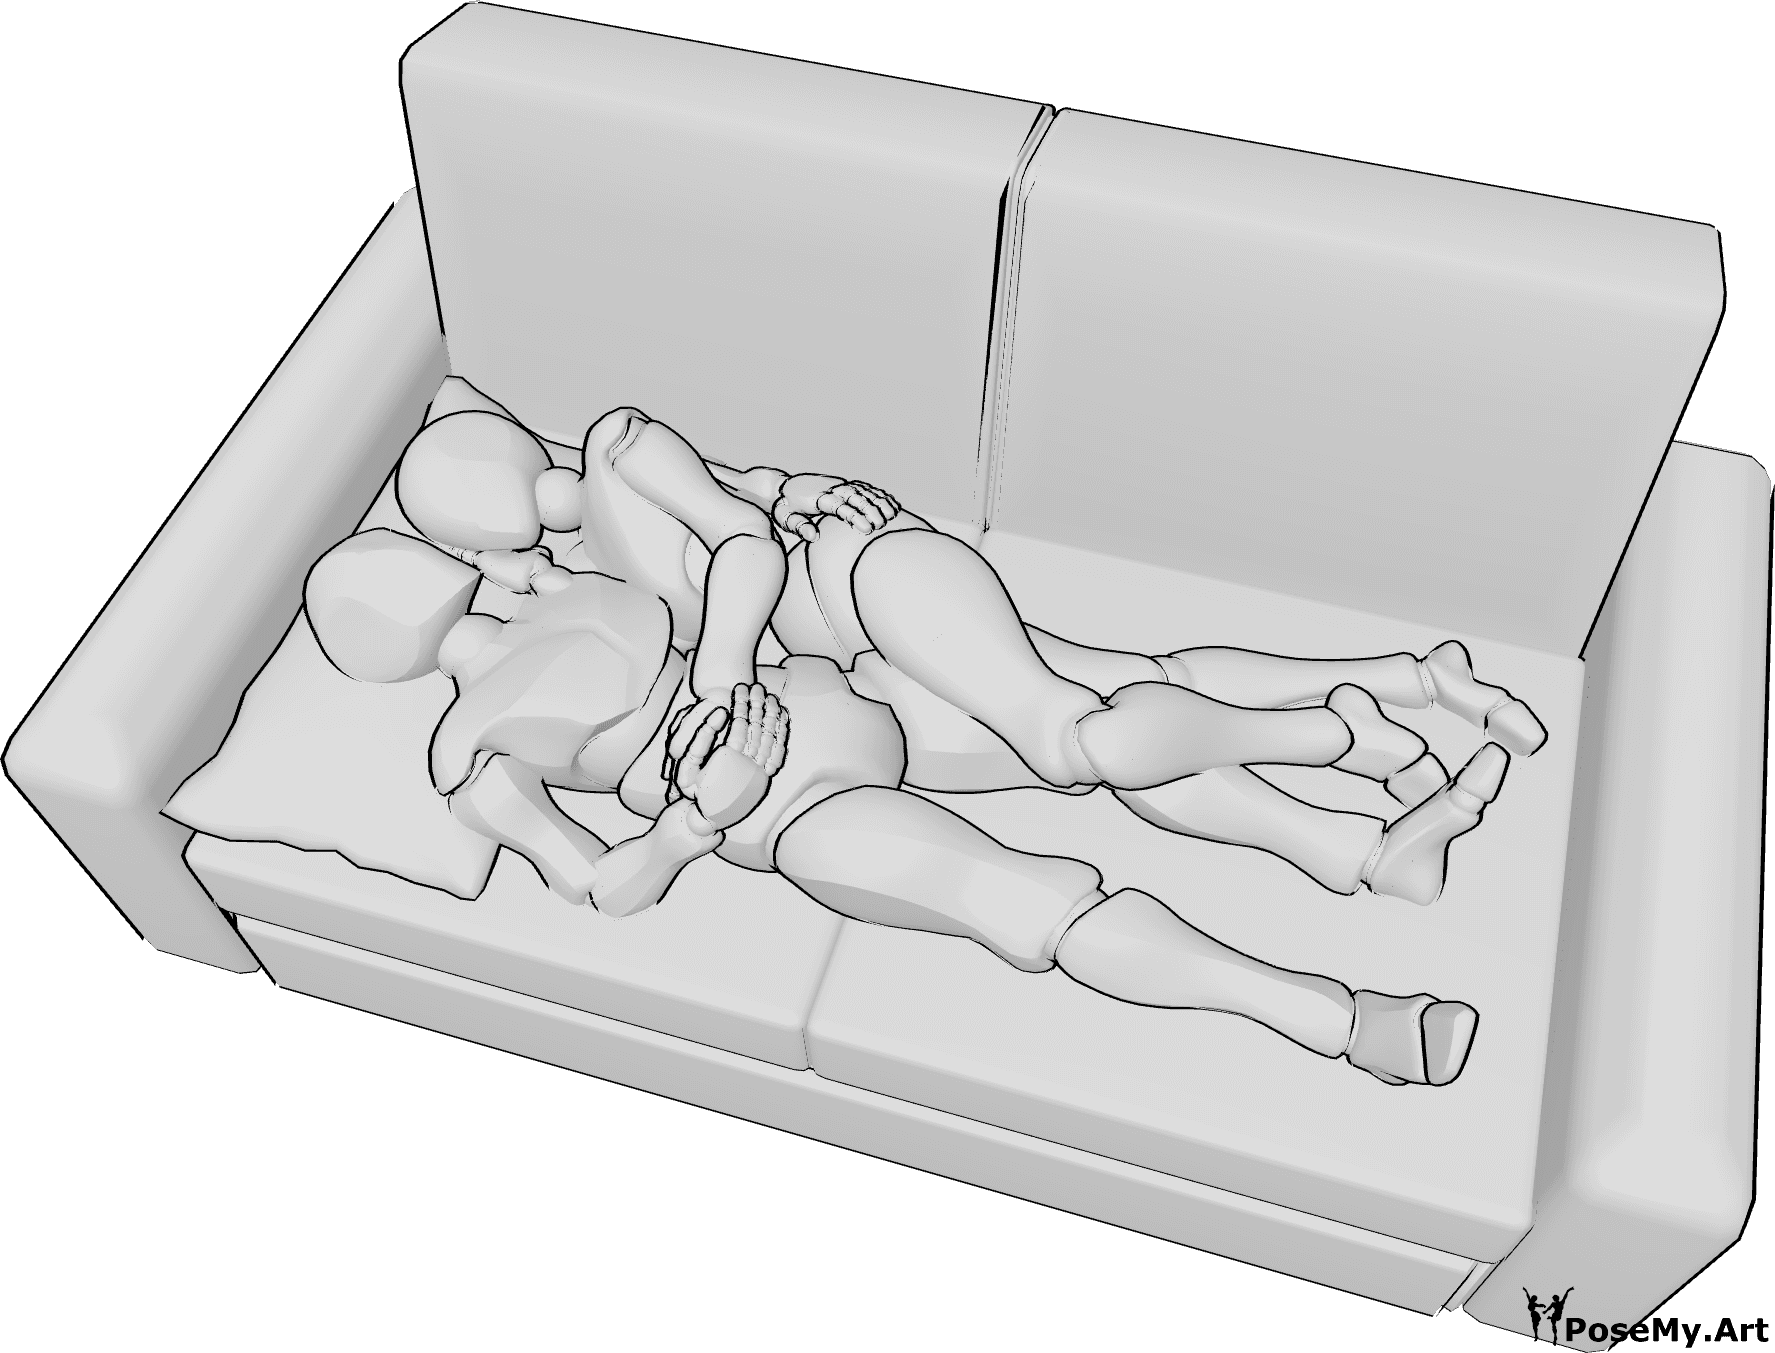 Referencia de poses- Postura de abrazo tumbado - La mujer y el hombre están tumbados en el sofá y se abrazan.